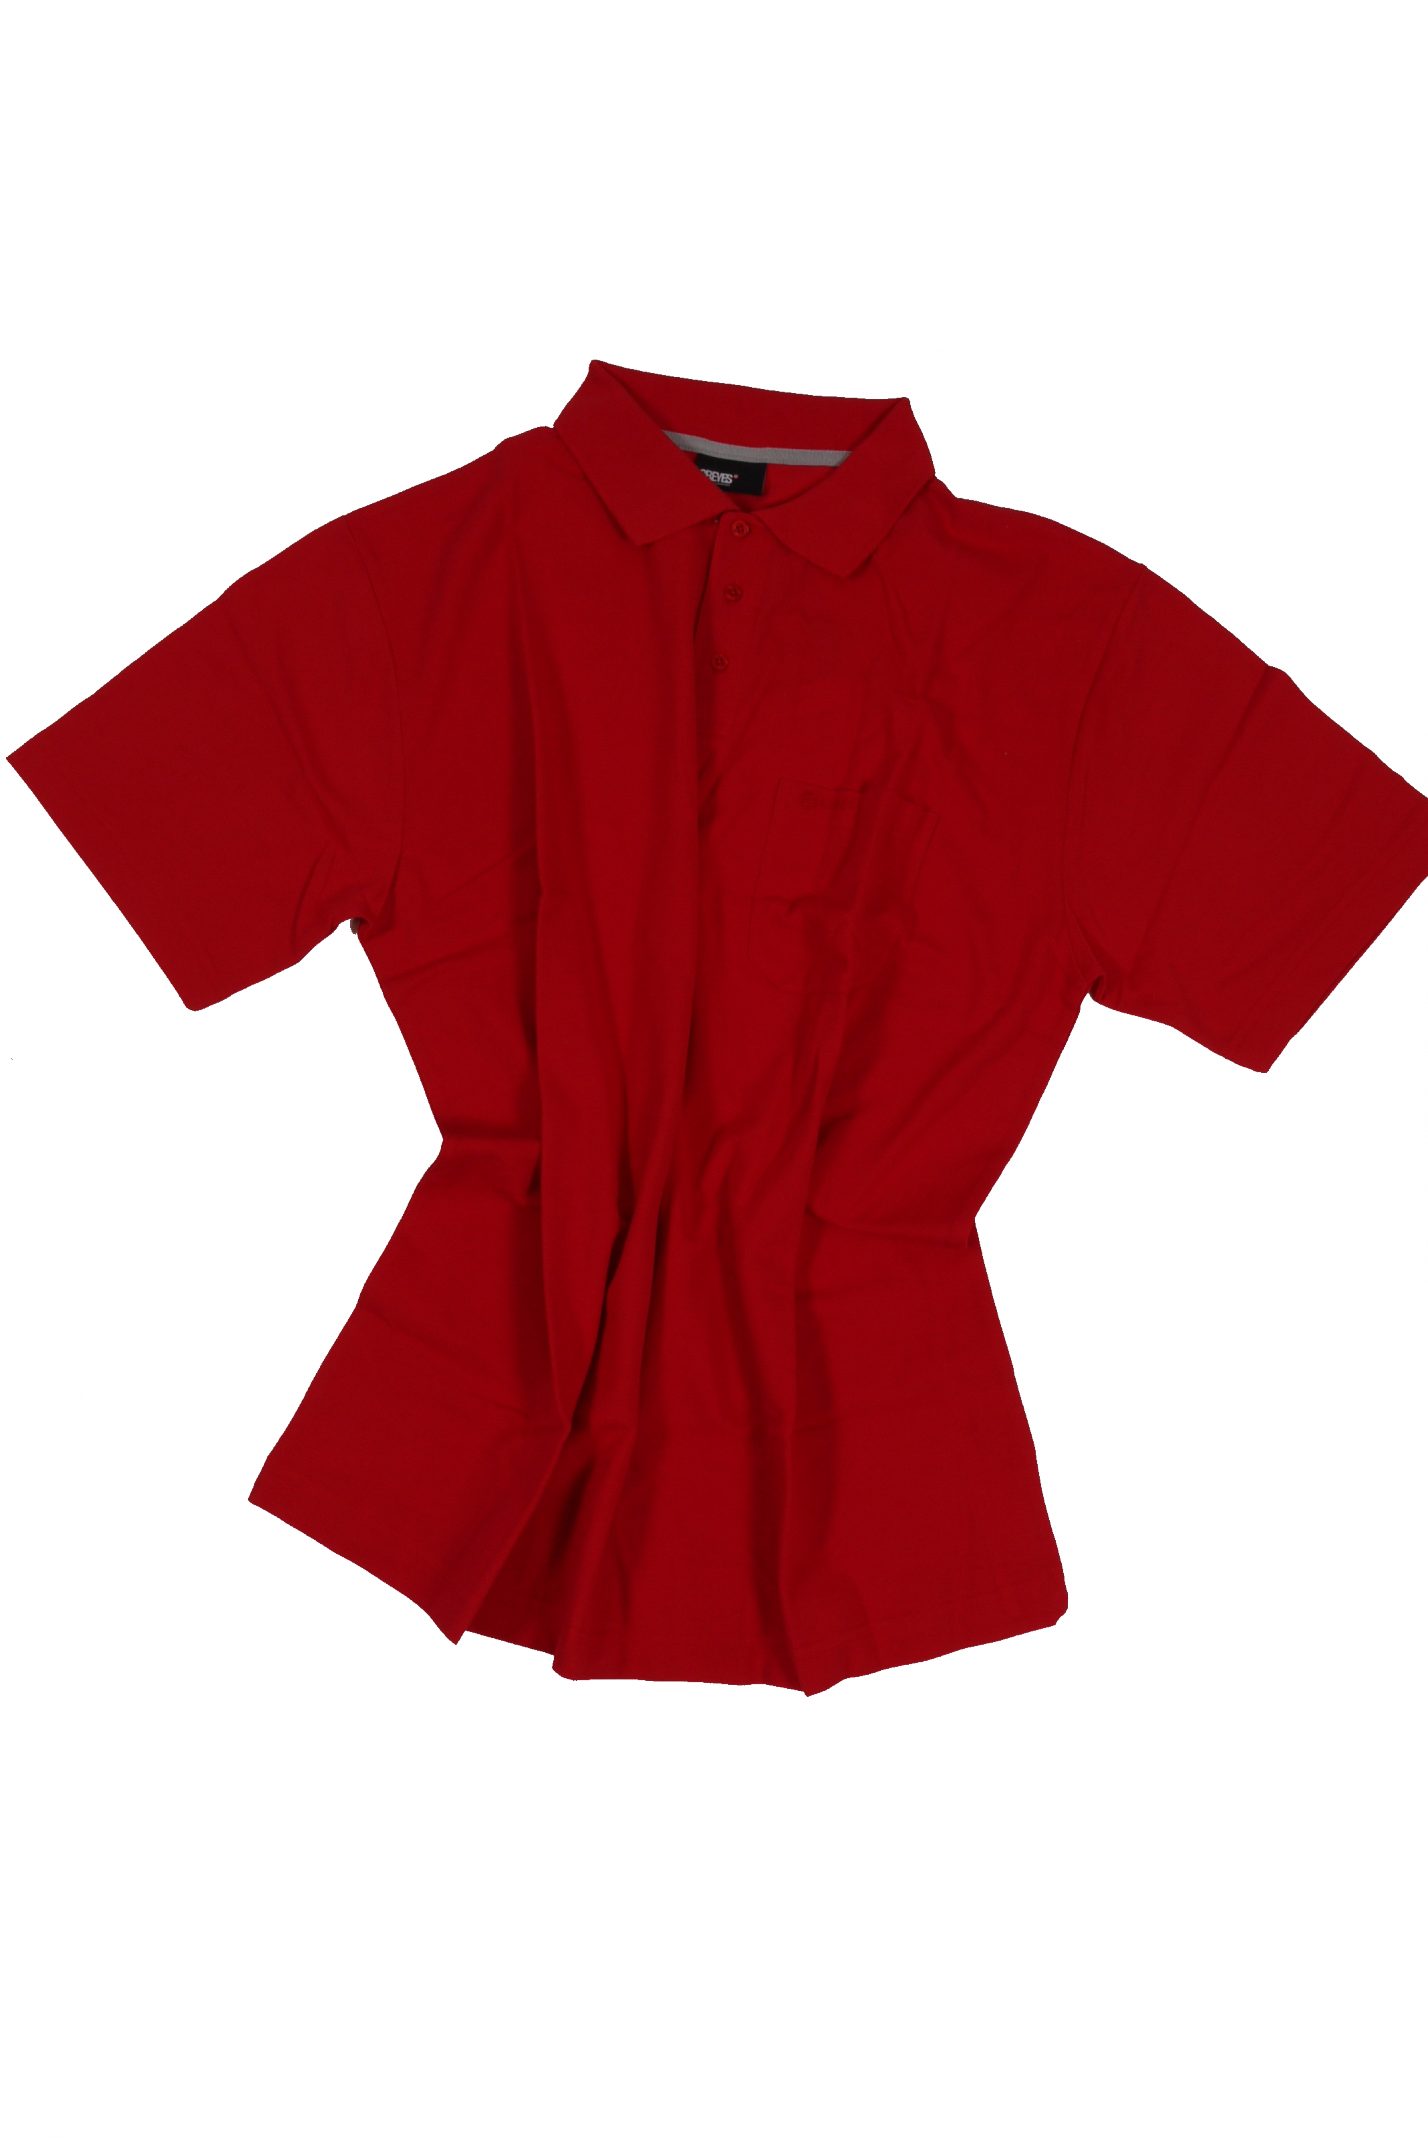 Allsize Polohemd 8XL von 56 bis 4 in Poloshirt pique in Übergröße north rot